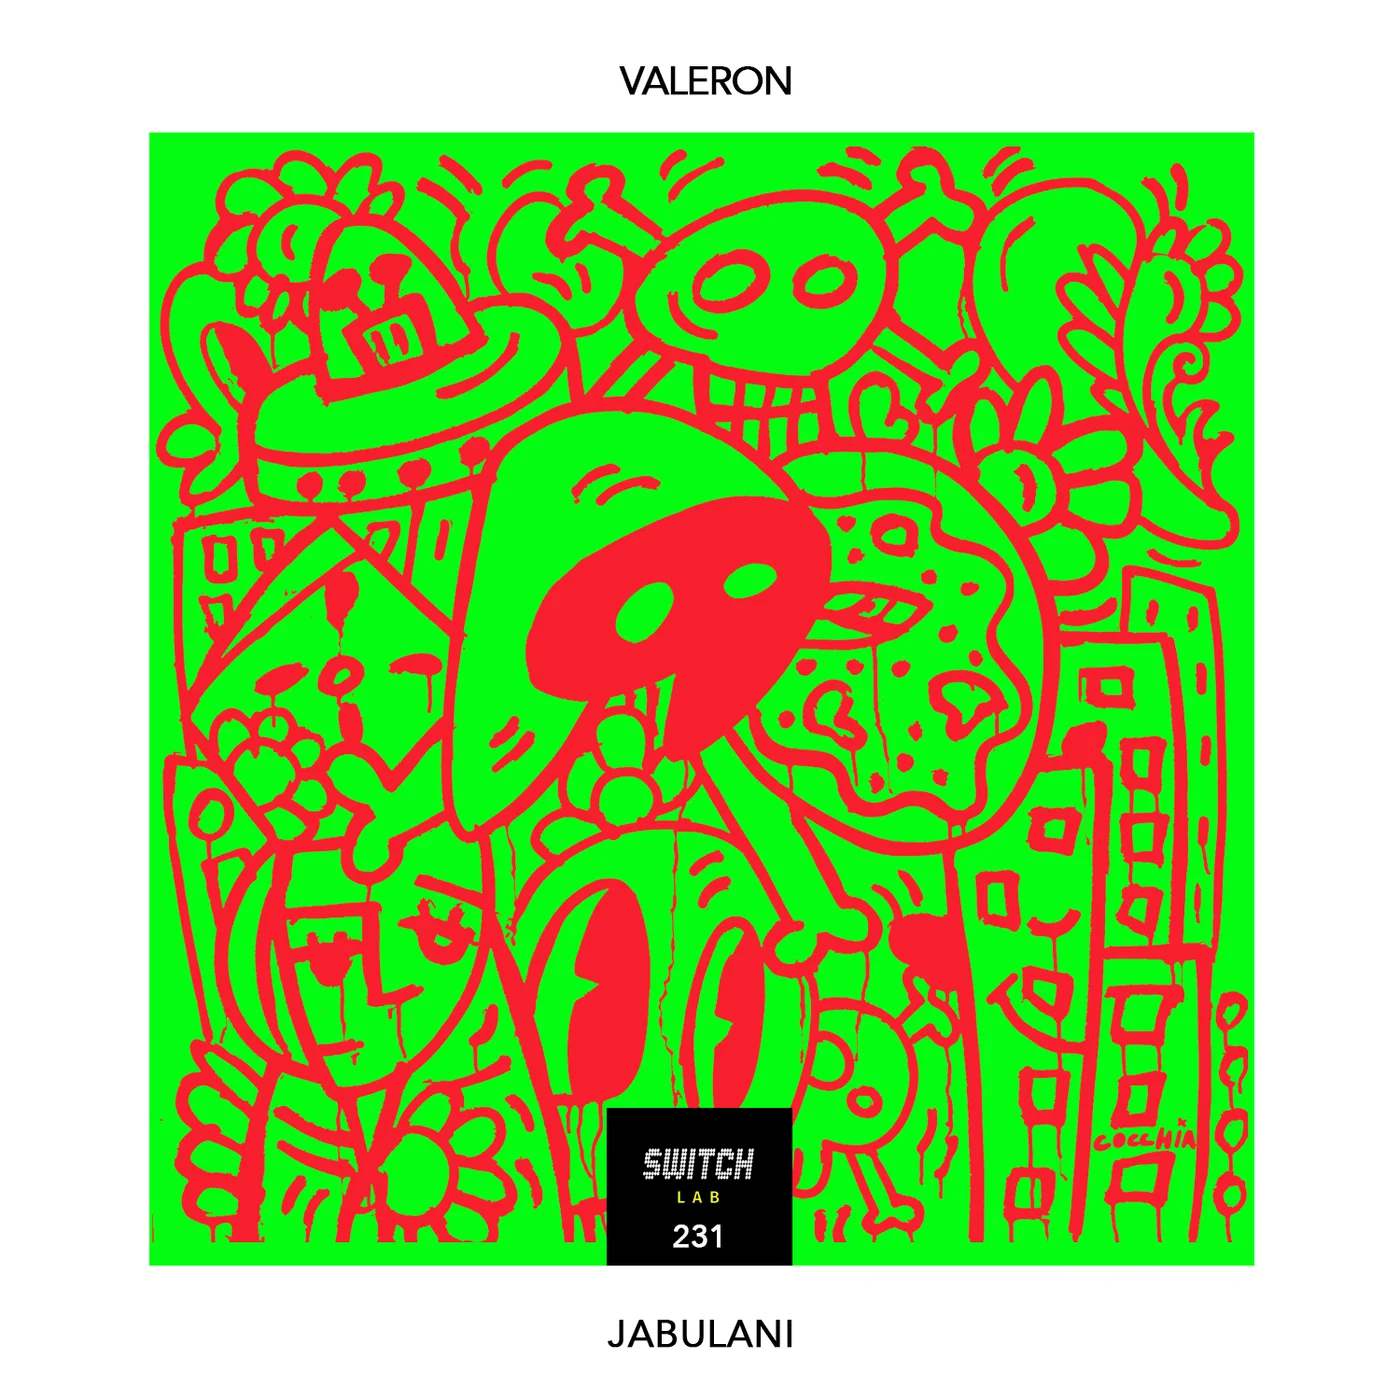 Valeron - Jabulani (Original Mix)